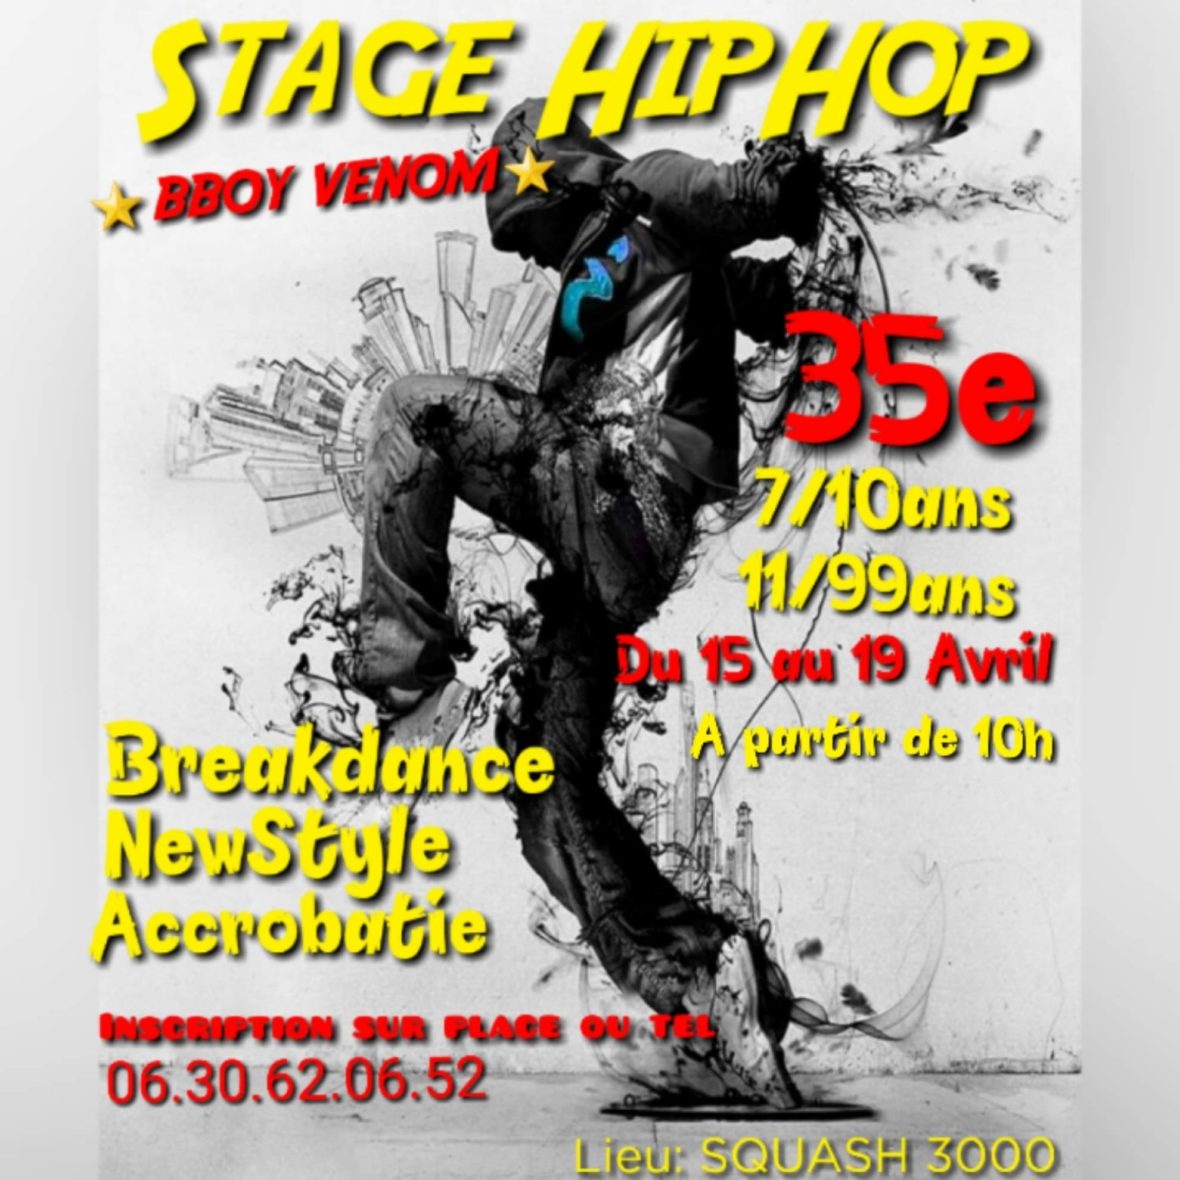 Stage de hip-hop et de breakdance